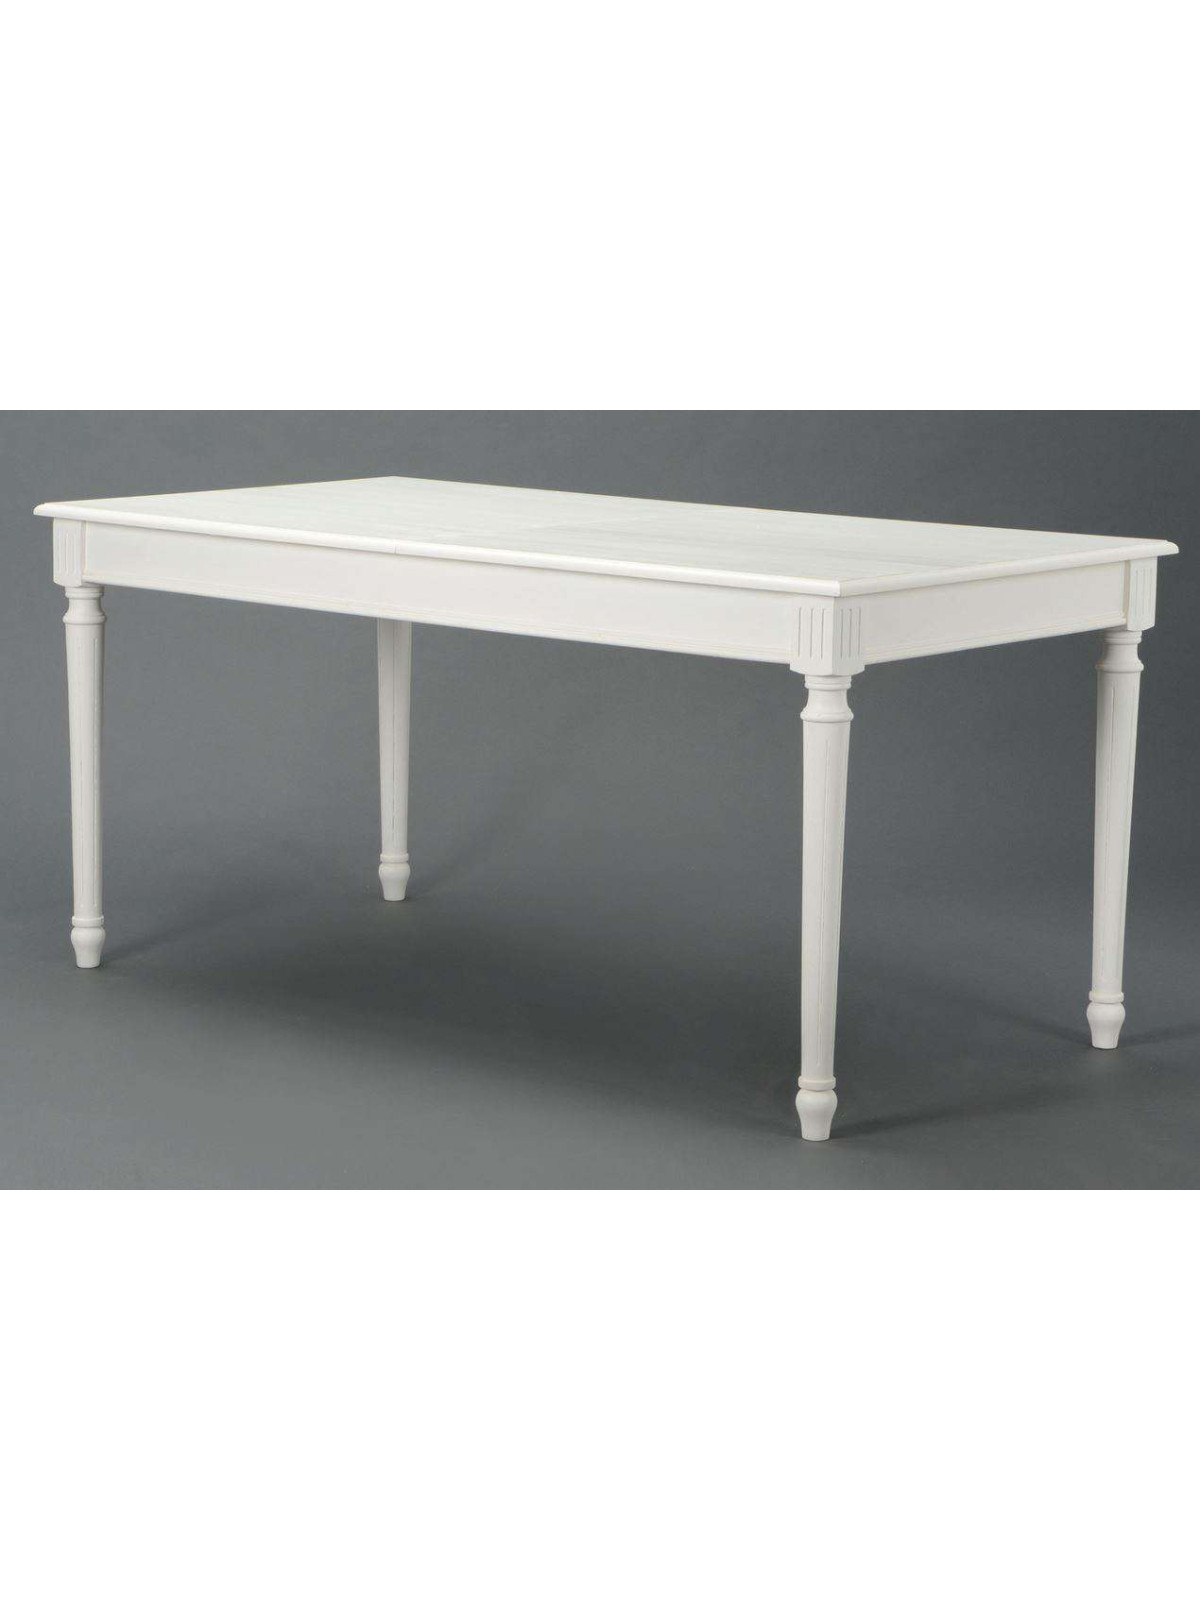 Grande table blanche chic 160 cm